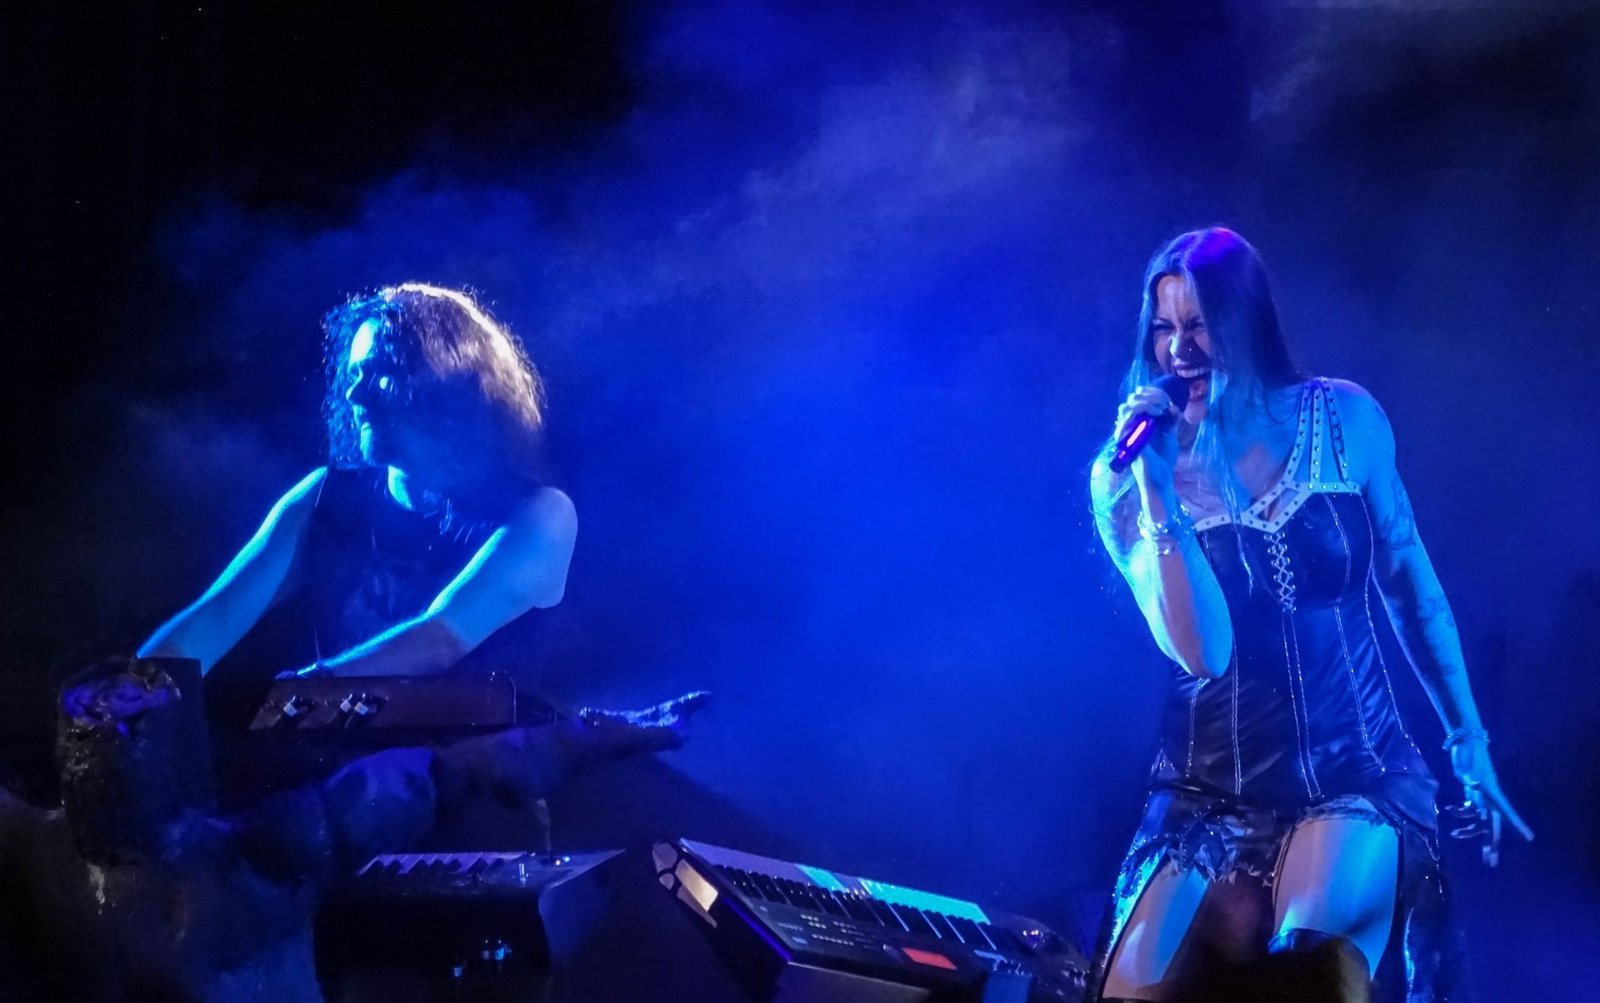 Floor Jansen vocals & Tuomas Holopainen keyboards